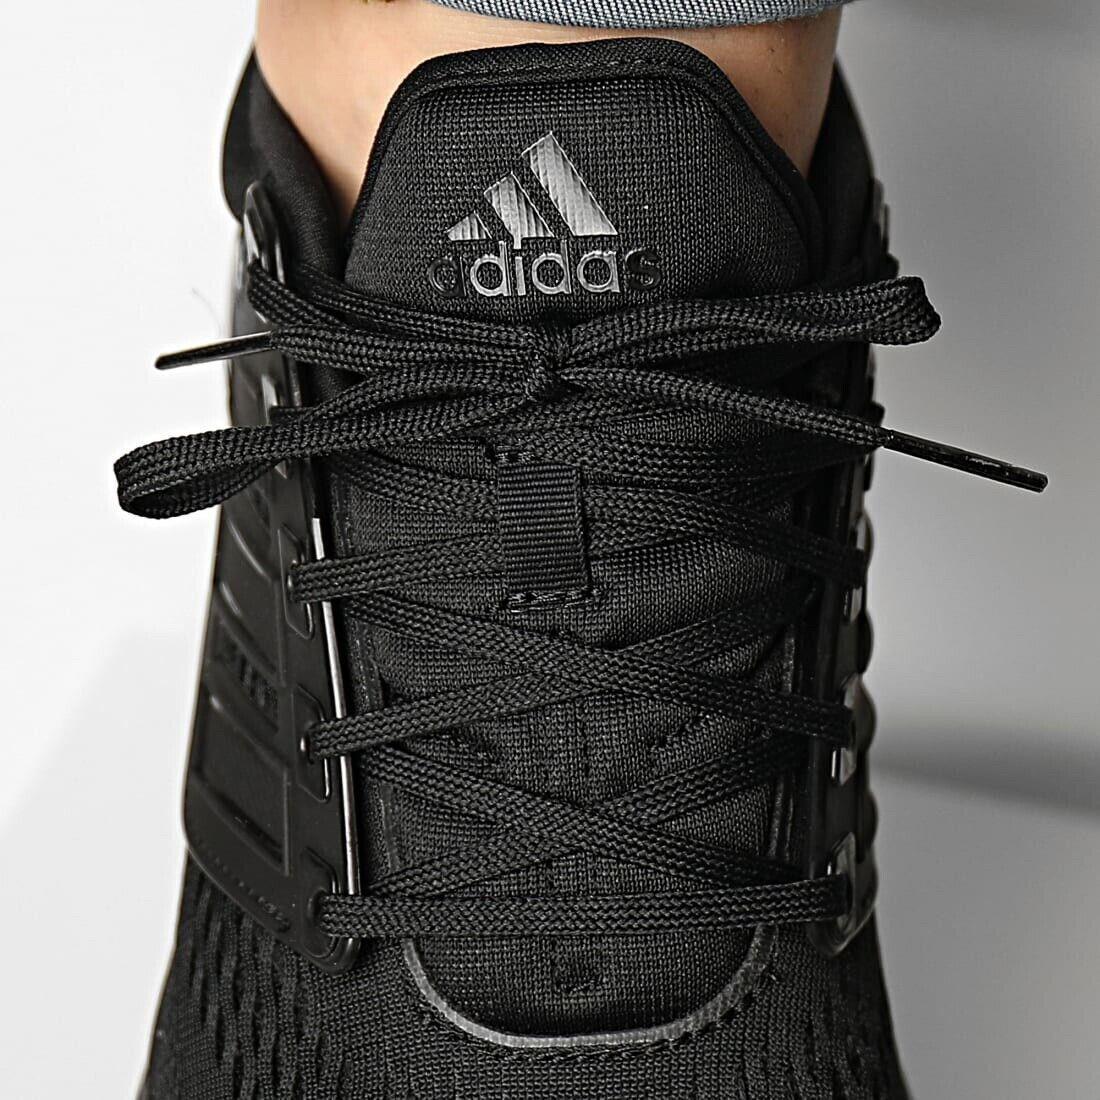 Adidas shoes  - Black 6